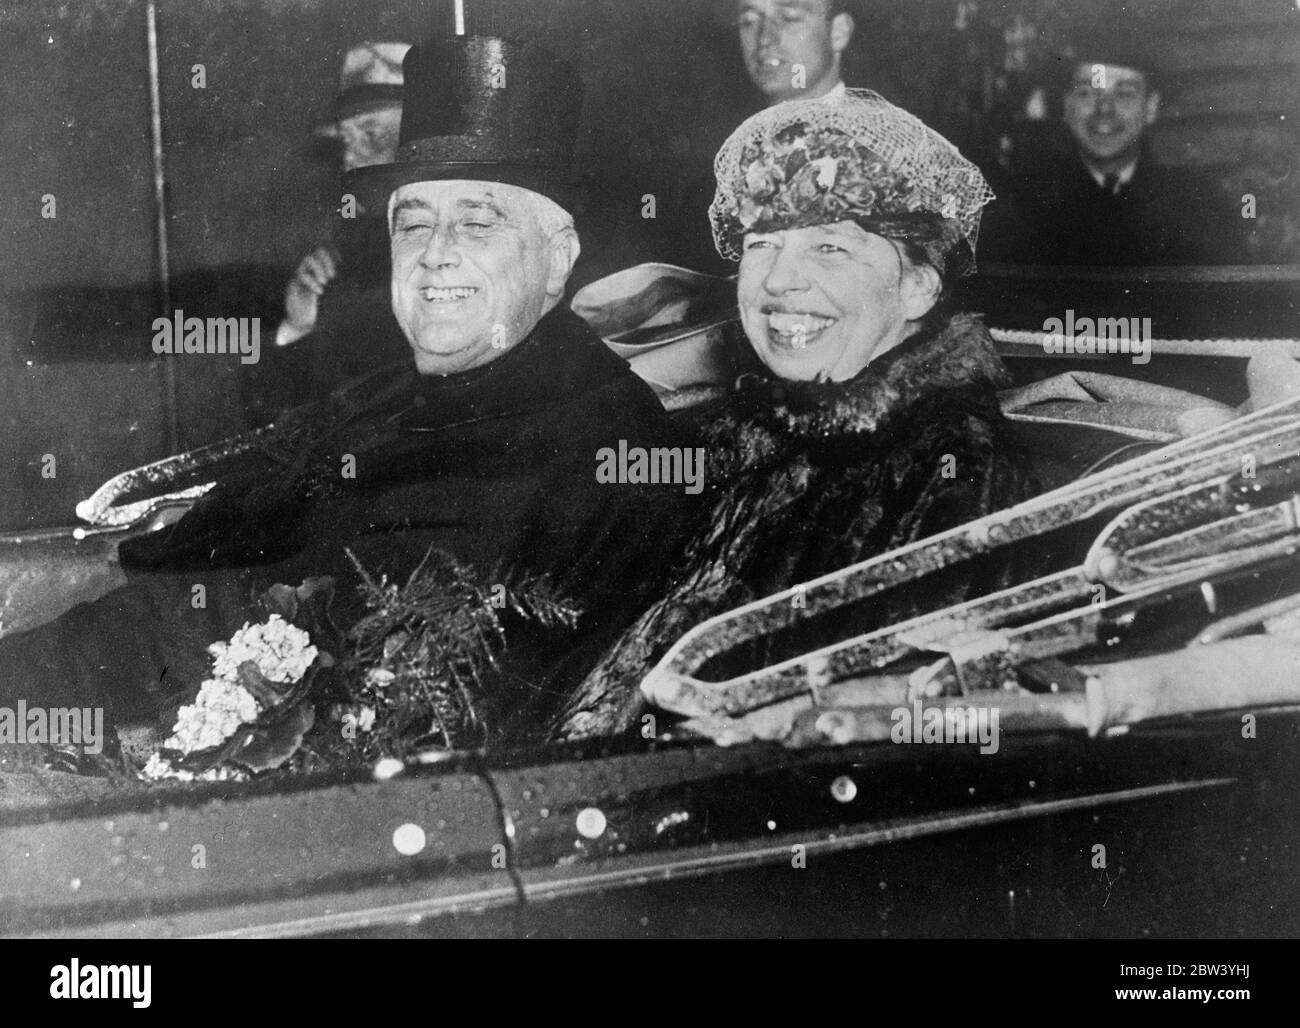 Roosevelts Lächeln bricht durch den Regen bei der Einweihung . Obwohl von dem starken Regen, der während der Zeremonie niedergegossen, getränkt, gelingt es Pres Franklin D Roosevelt, sein berühmtes Lächeln zu geben, als er den Eid bei seiner Einweihung für seine zweite Amtszeit als Präsident der Vereinigten Staaten nahm. Riesige Menschenmengen standen stundenlang Hauptstadt , Washington , DC , um die Eröffnungsrede zu hören . Foto zeigt, regen getränkten Präsident Roosevelt und Frau Roosevelt Lächeln breit, wie sie zurück zum Weißen Haus in den Regenguss nach der Einweihung fahren. 27. Januar 1937 Stockfoto